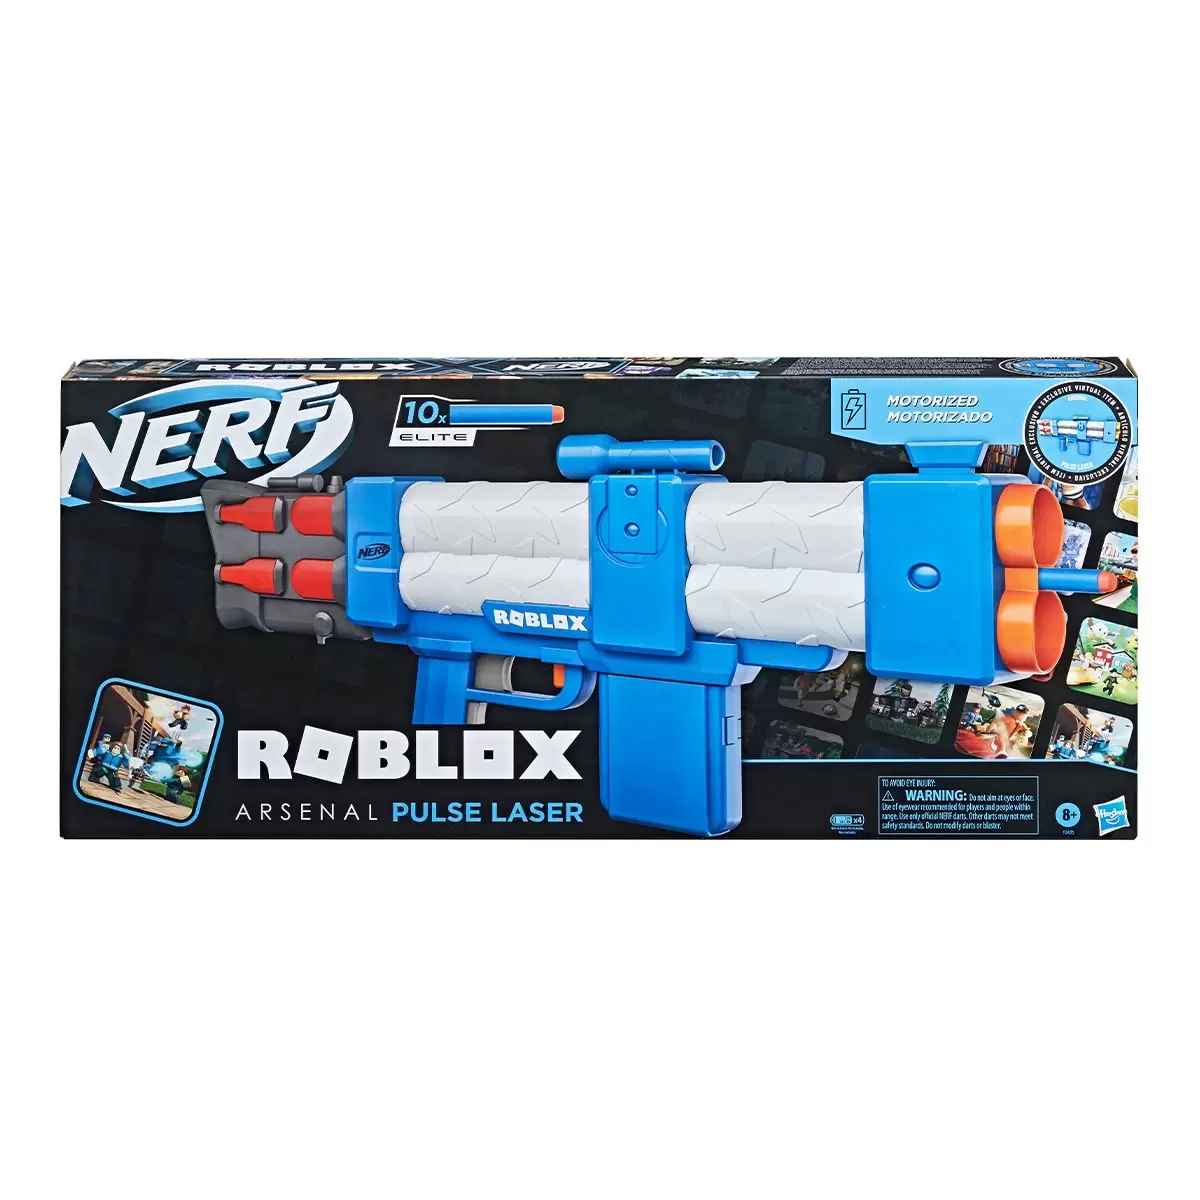 Nerf Roblox Arsenal 脈衝雷射射擊器